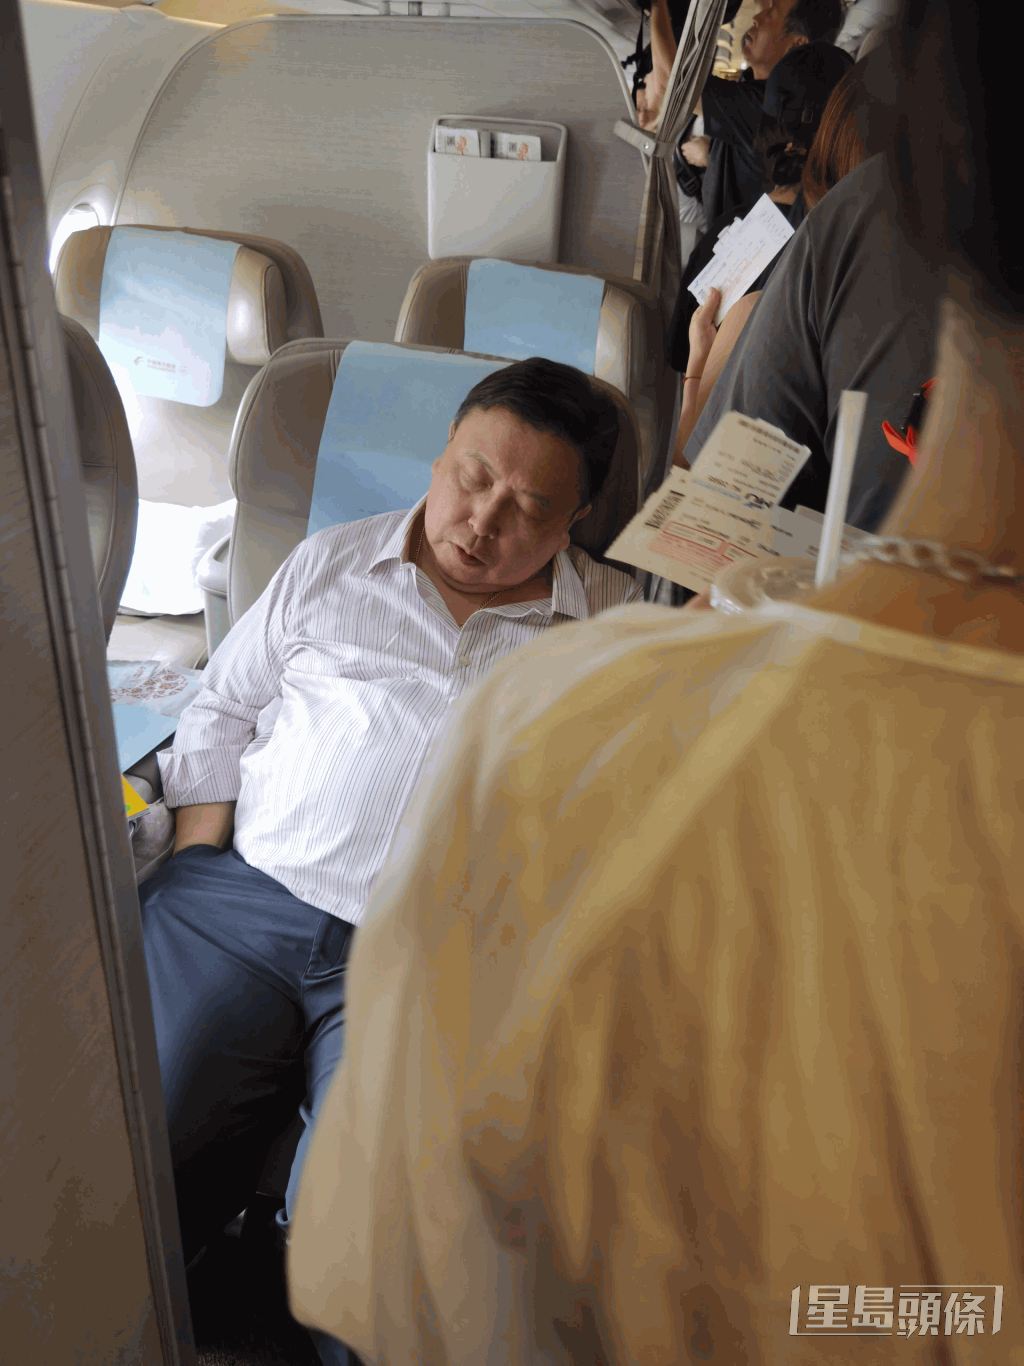 行程忙碌的王晶被网民拍到在登机期间竟然可以安然入睡。